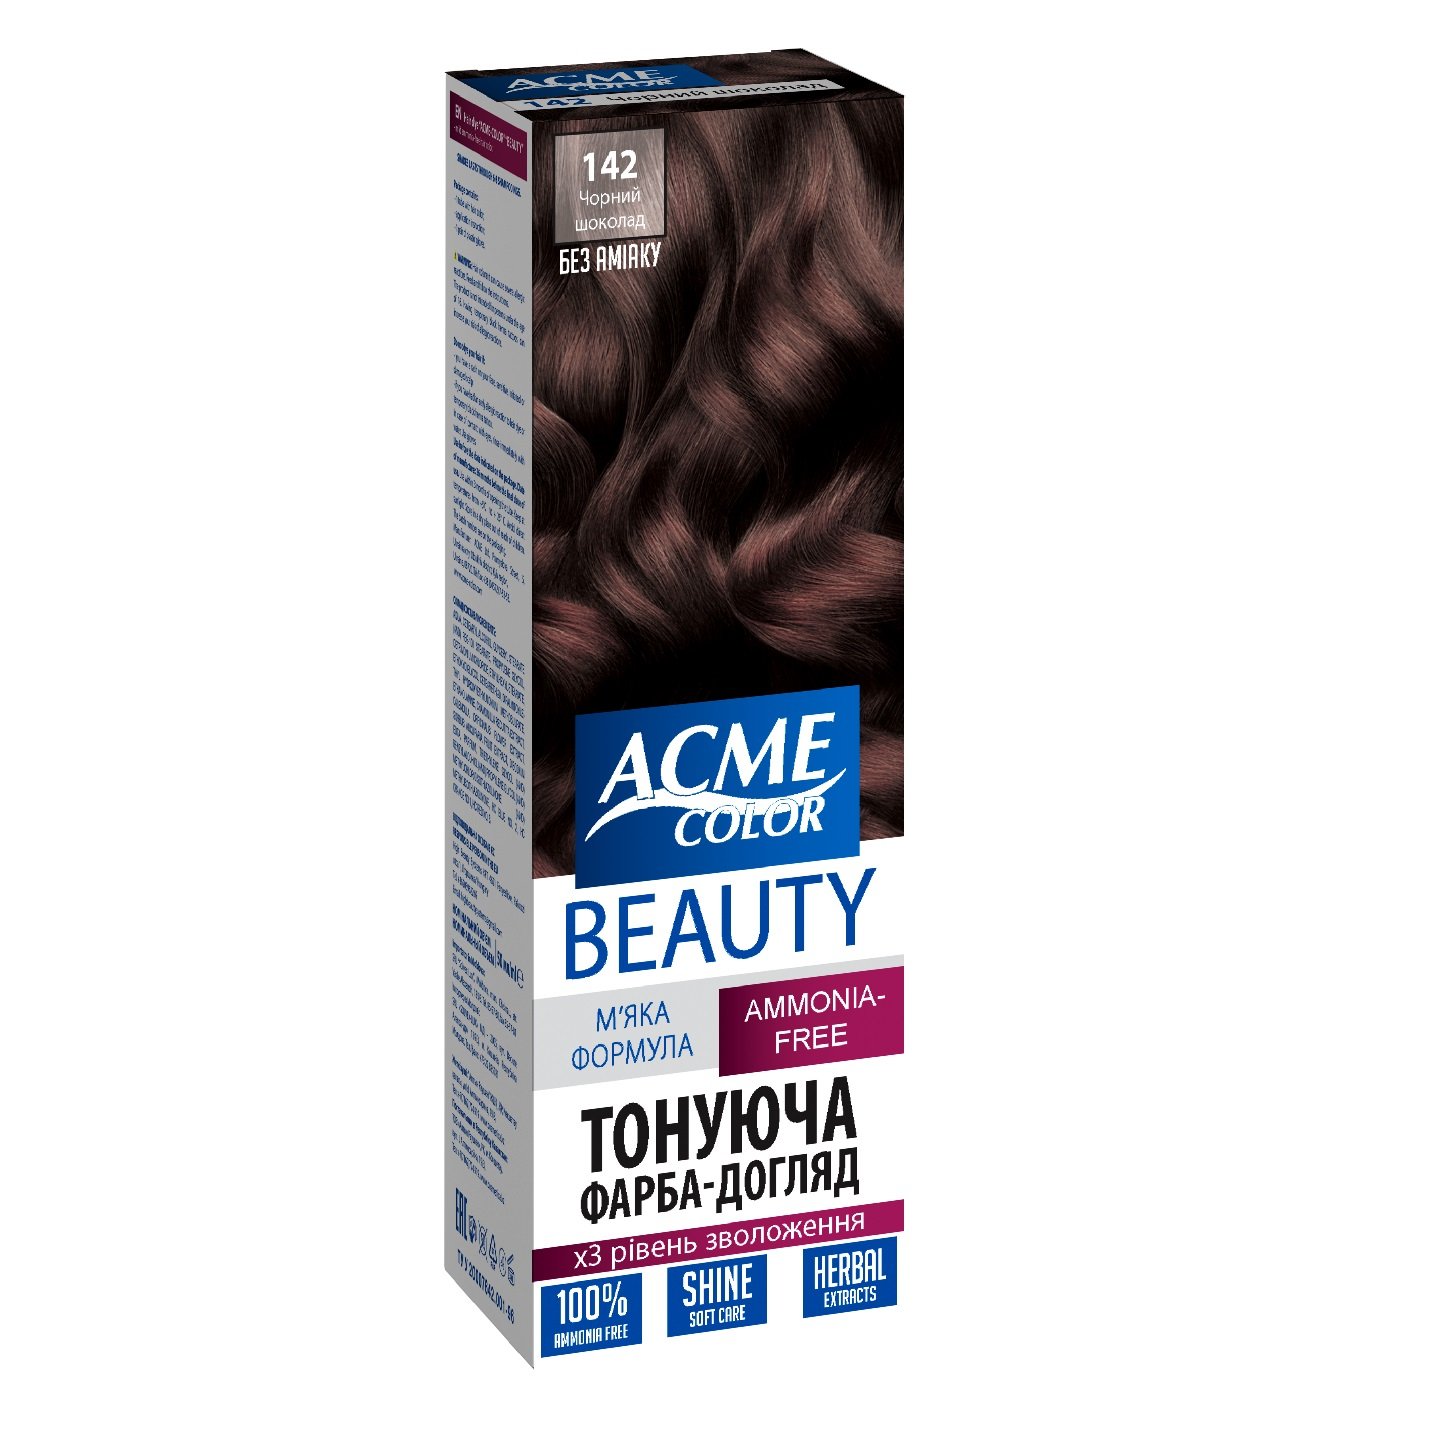 Гель-краска для волос Acme-color Beauty, оттенок 142 (Черный шоколад), 69 г - фото 1